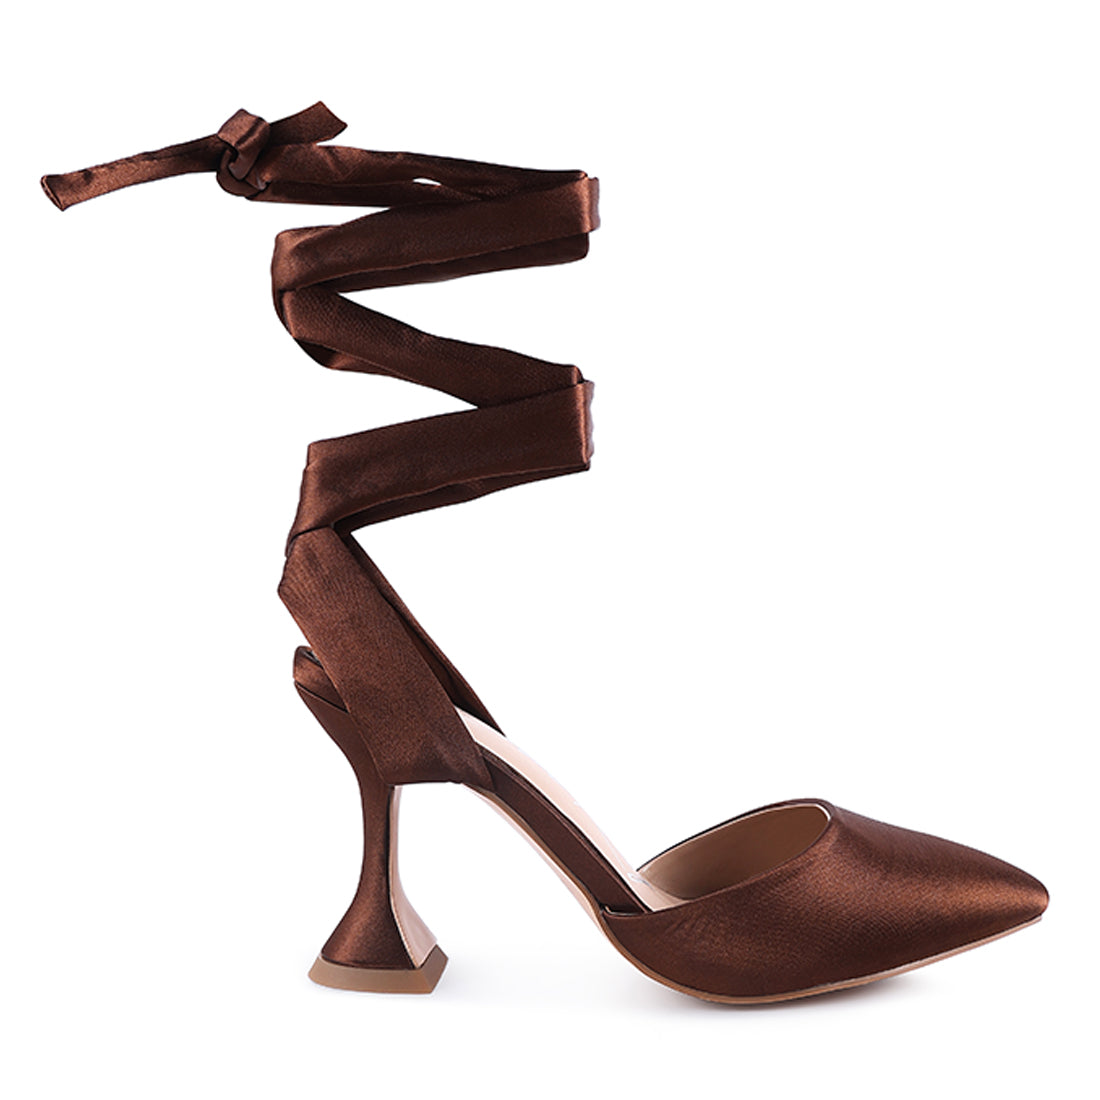 Spool Heel Tie Up Satin Sandals in Brown